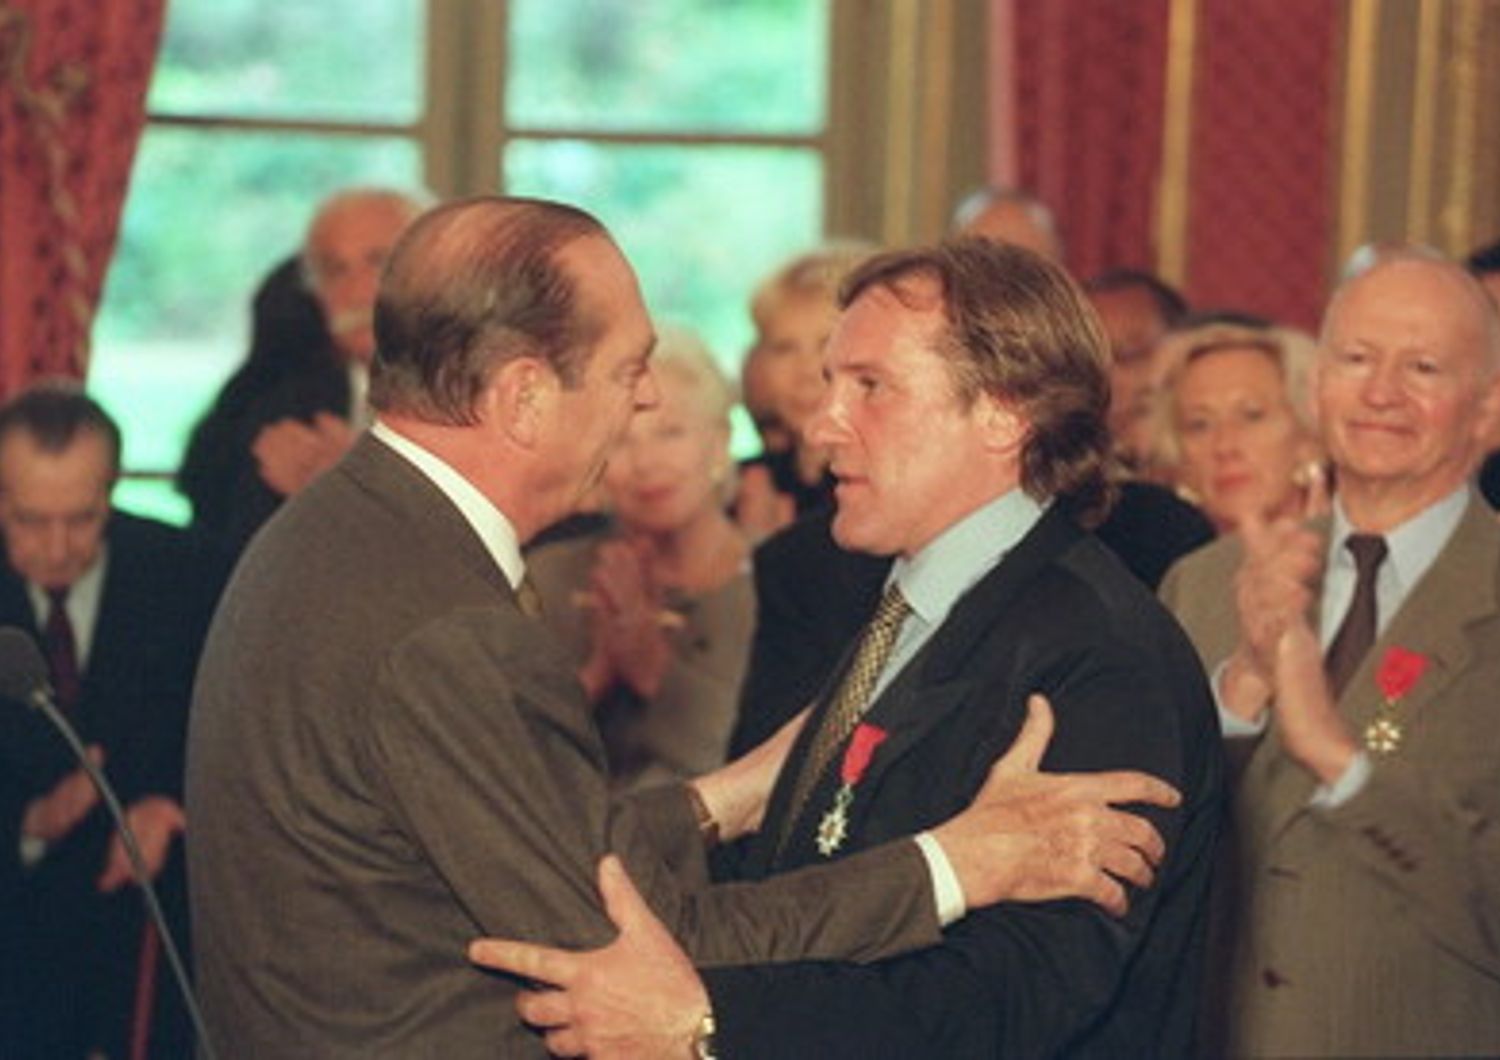 Il presidente Chirac conferisce la Legion d'Honneur a Depardieu (1996)